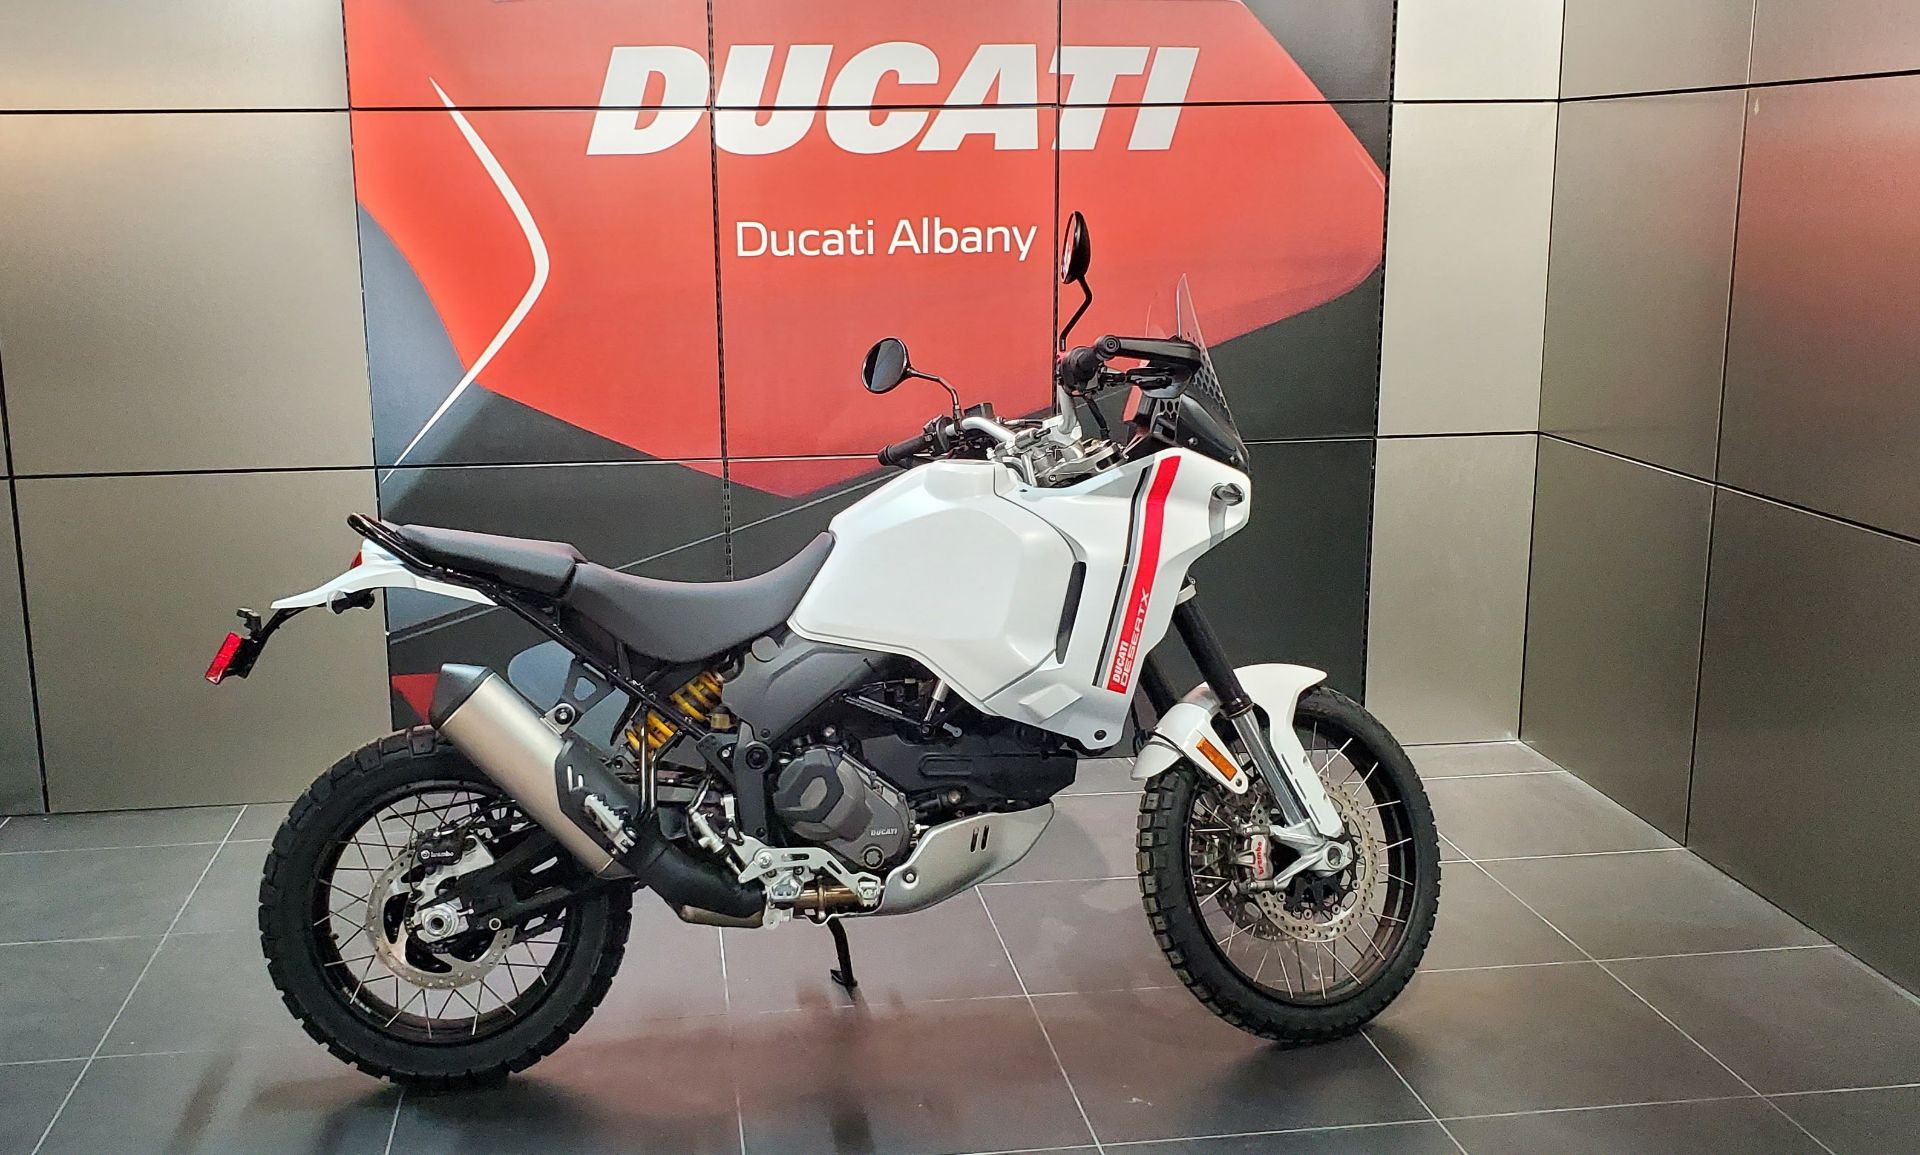 2023 Ducati DesertX in Albany, New York - Photo 1